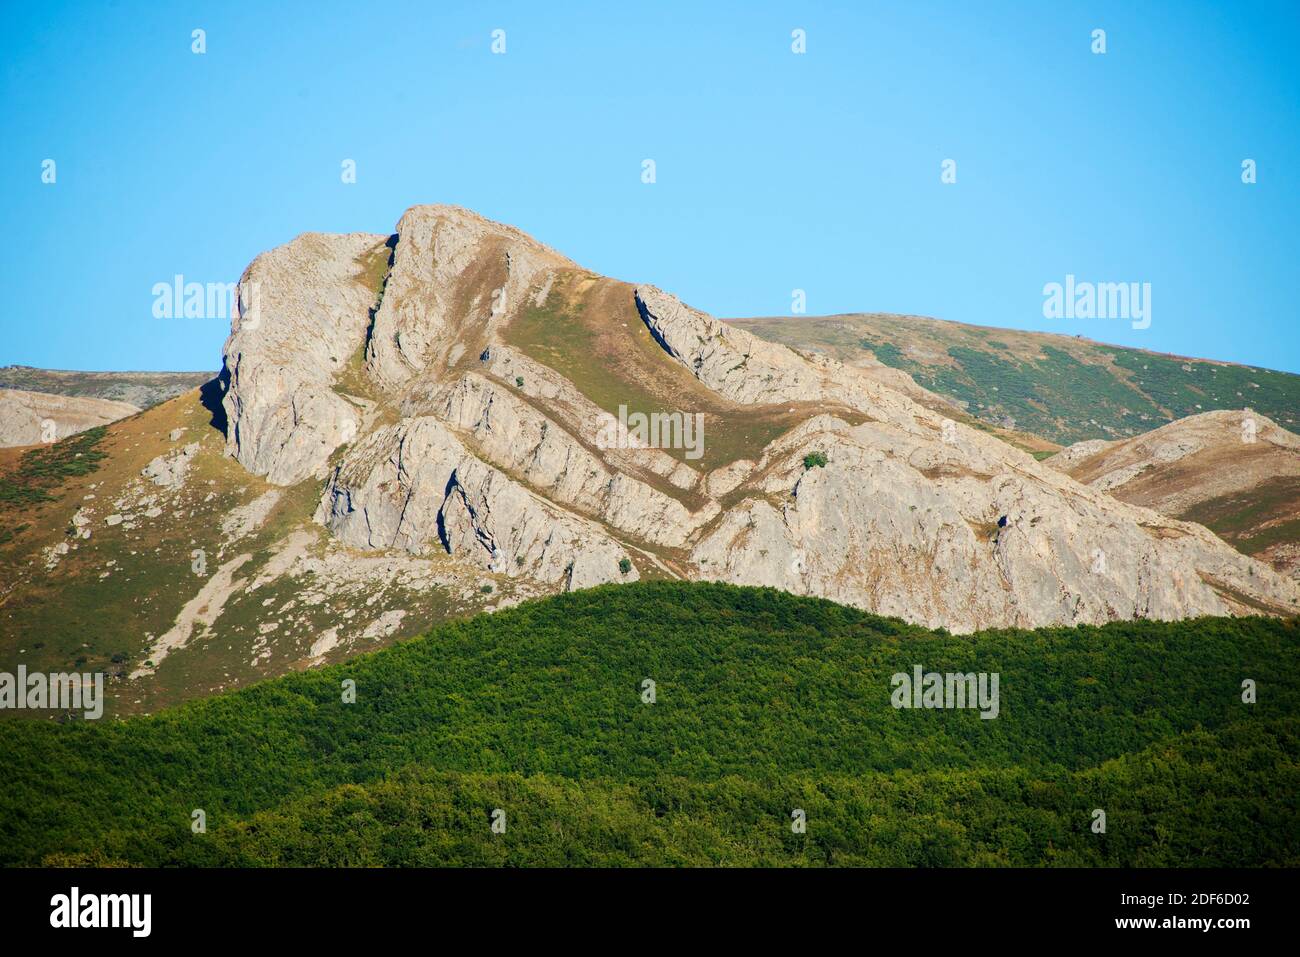 Rilievo invertito o topografia invertita con piegatura sinclinale. Cordillera Cantabrica, Valle de Redondo, Palencia, Castilla y Leon, Spagna. Foto Stock